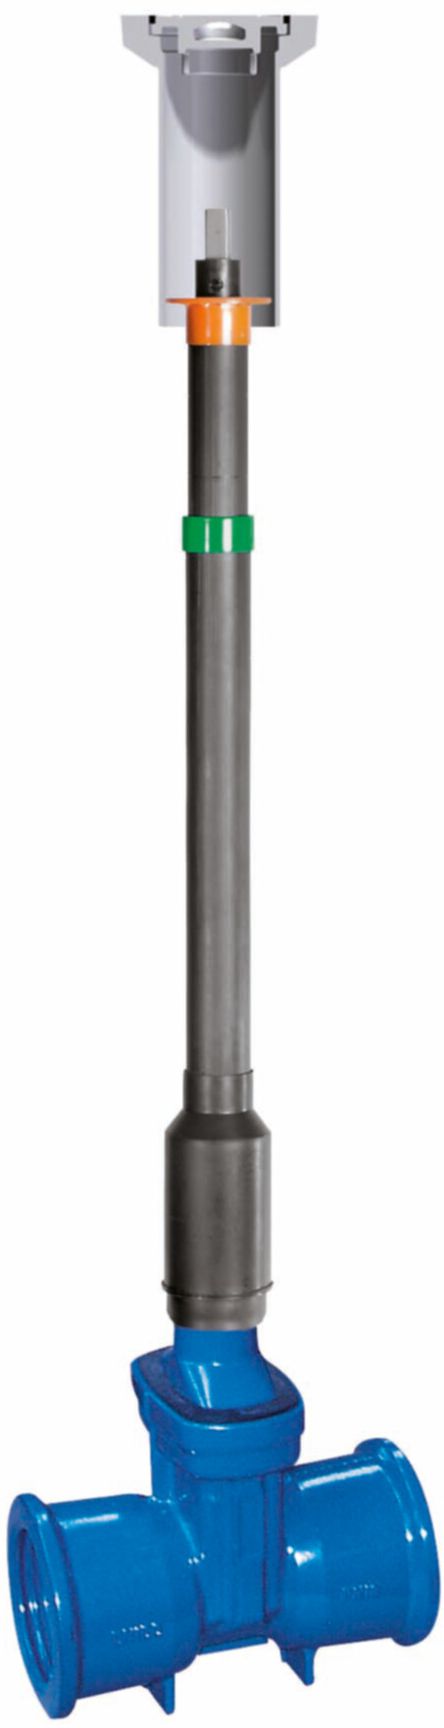 Teleskop-Einbaugarnitur Fig. 6895 L3 DN 200 GT 1.78- 2.50 m - Von Roll Armaturen